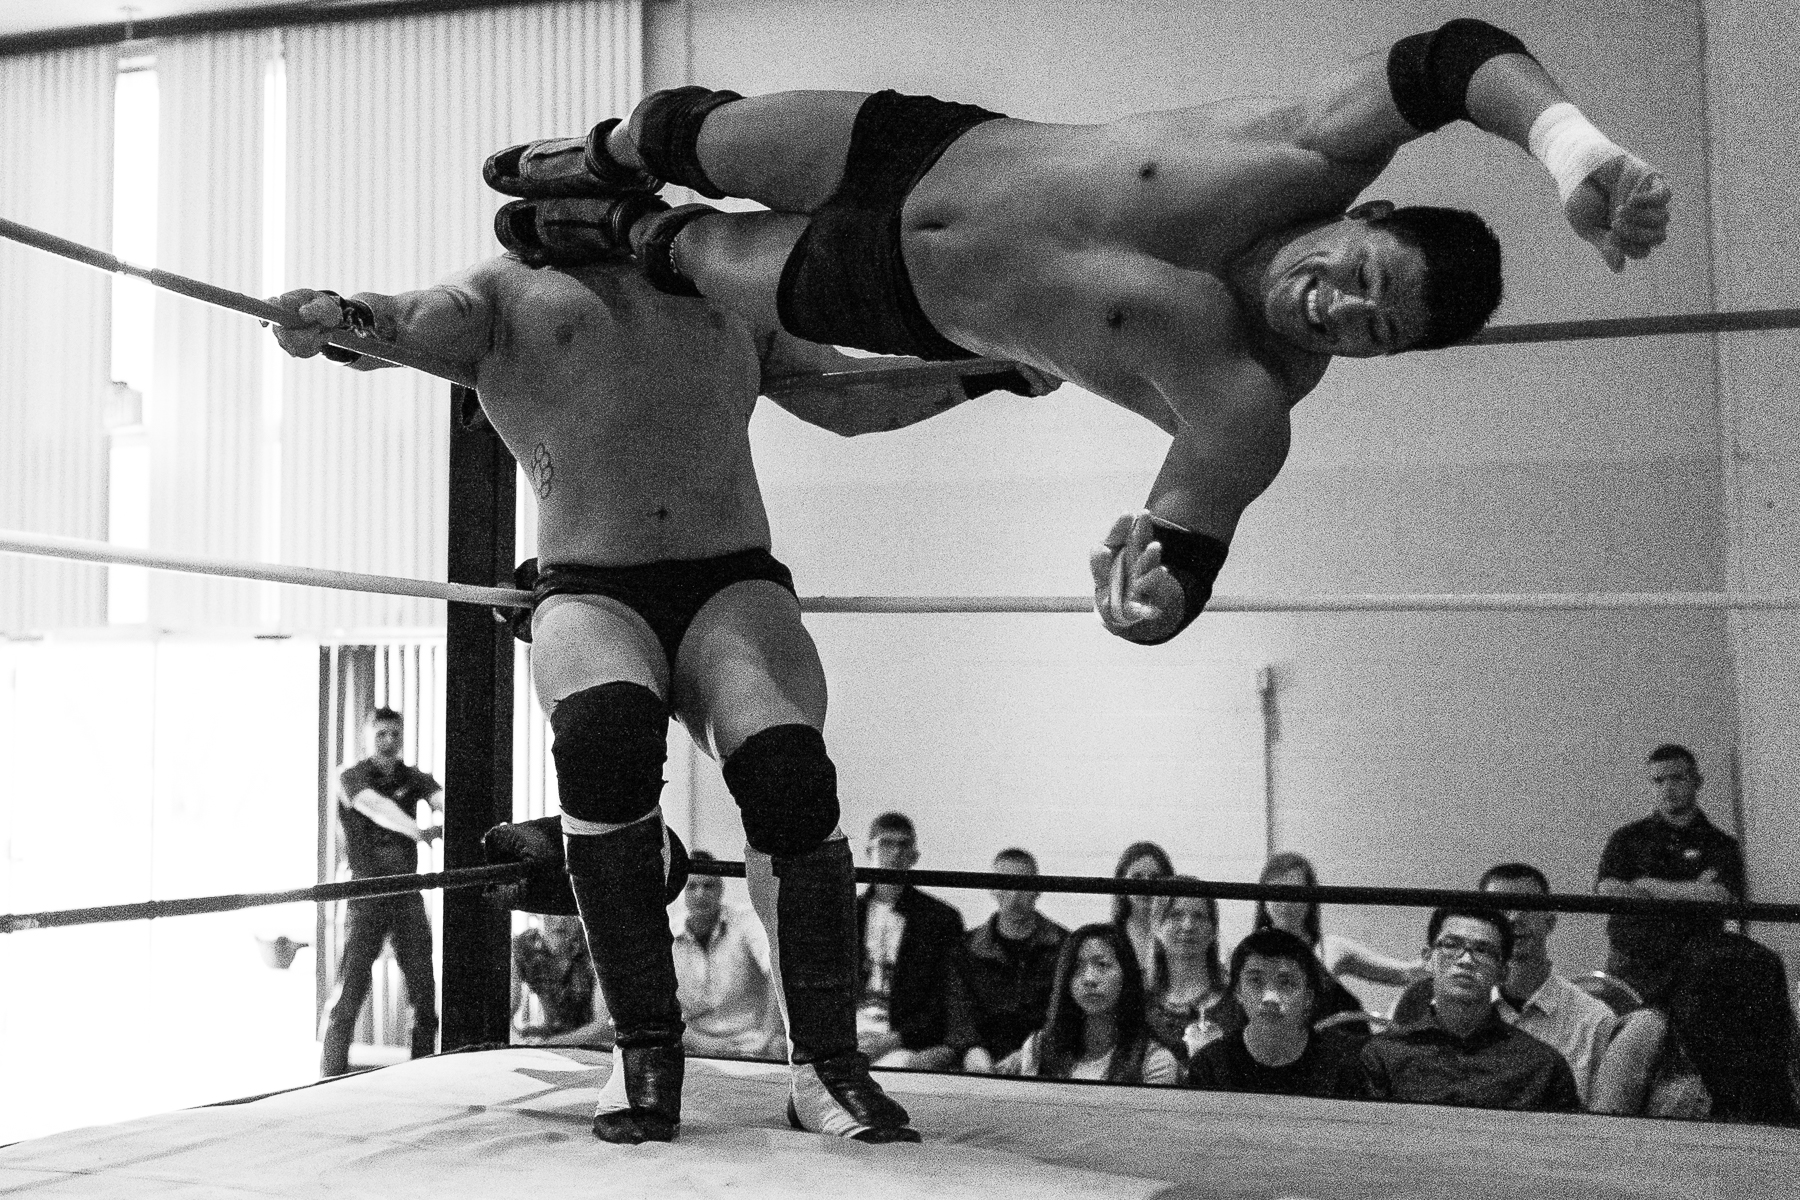 andre-hermann-wrestling-23.jpg